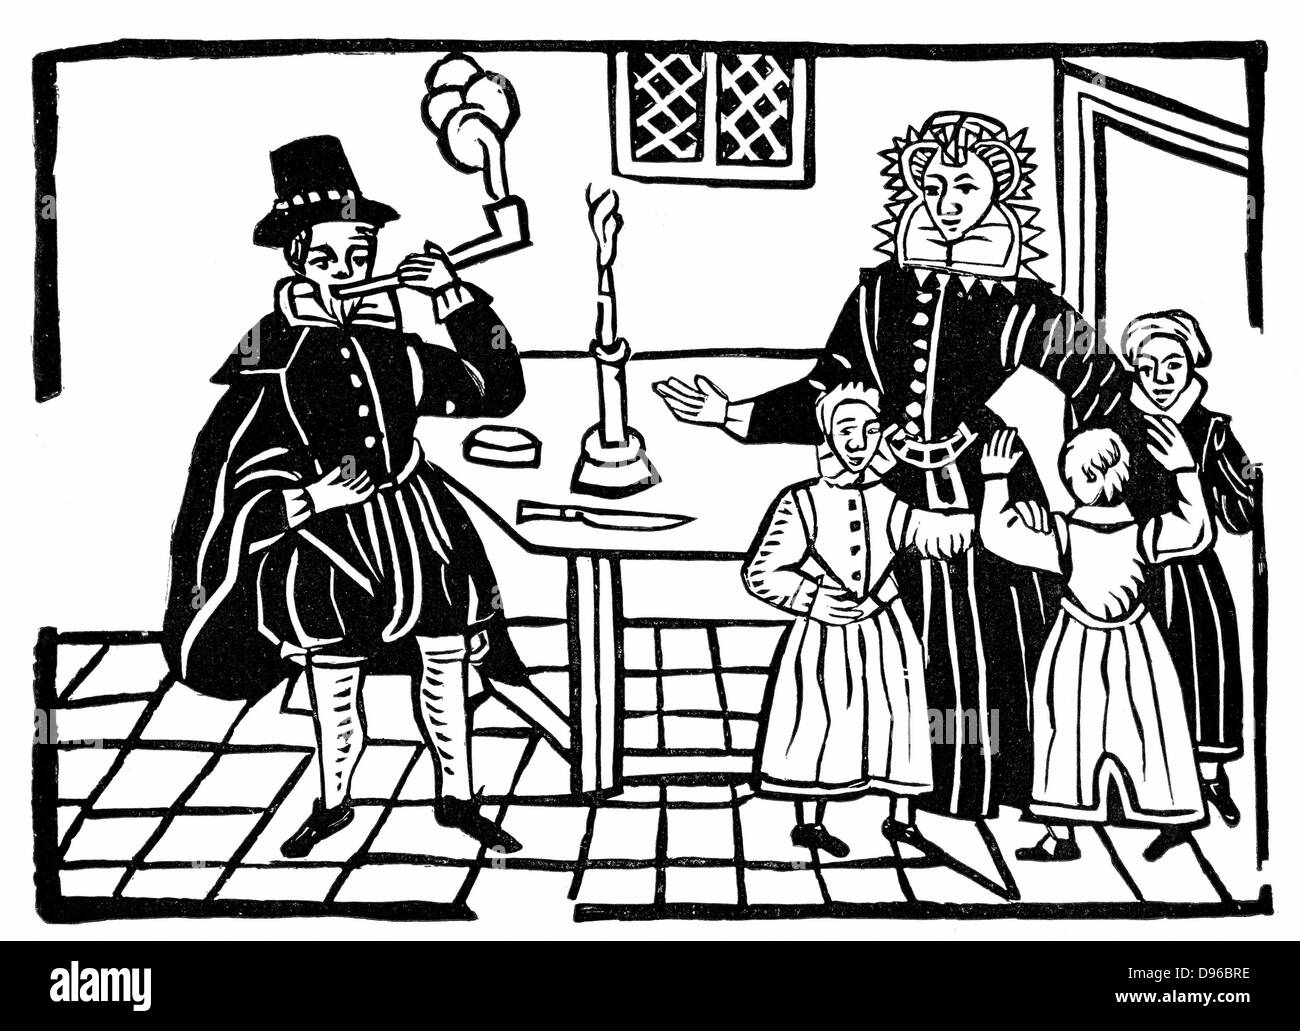 Familie: Vater mit Rohr produzieren viel Rauch, während seine Frau und seine Kinder scheinen zu Einwände werden. Holzschnitt aus The Roxburghe Ballads (Anfang 17. Jahrhundert). Stockfoto